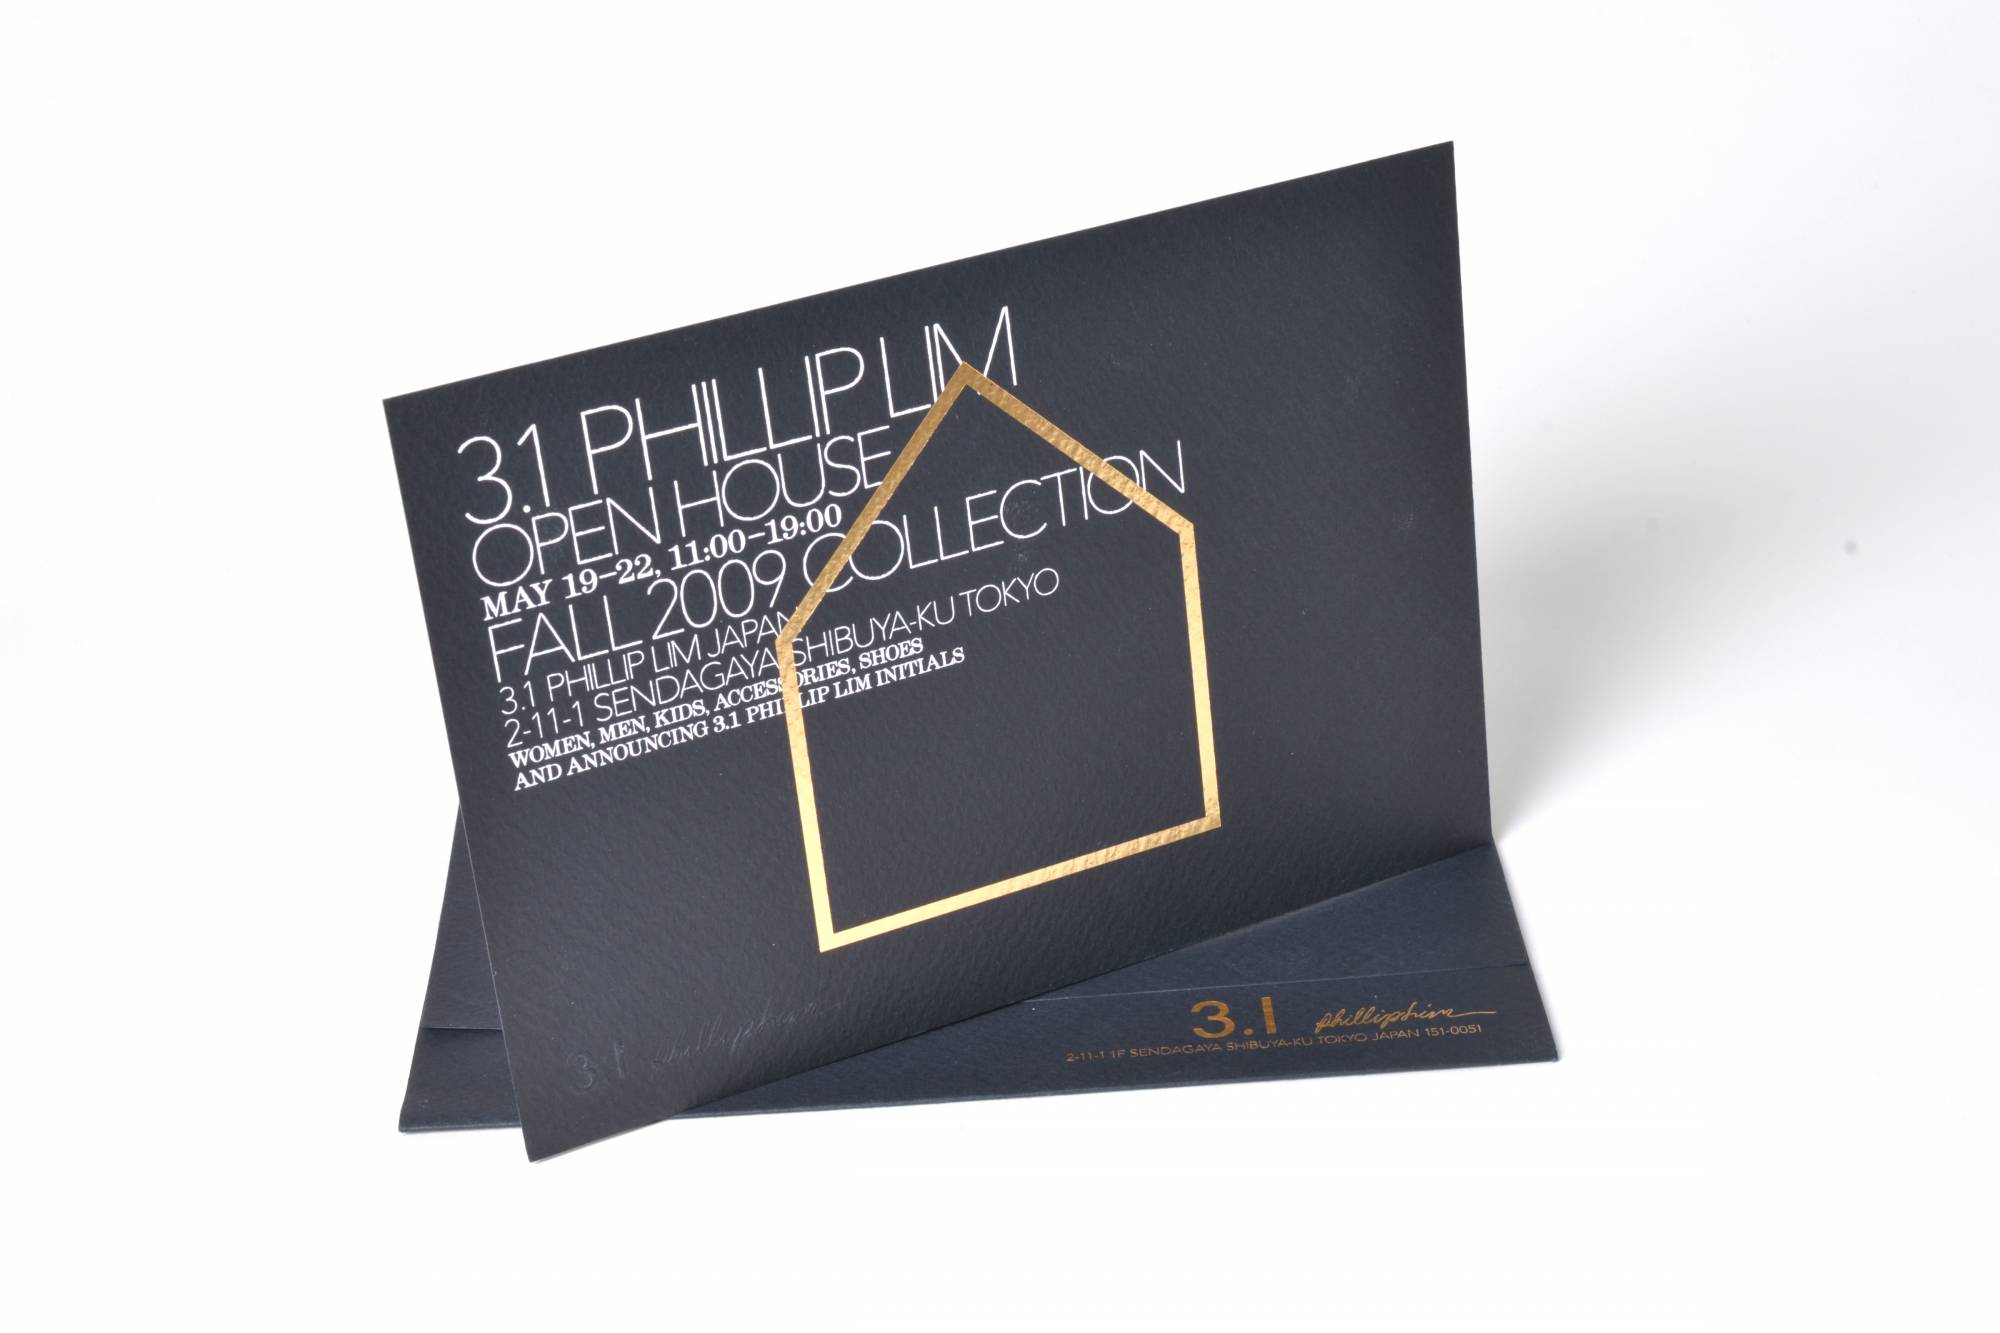 3.1 Phillip Lim Invitation Design – Fall 2009 Collection